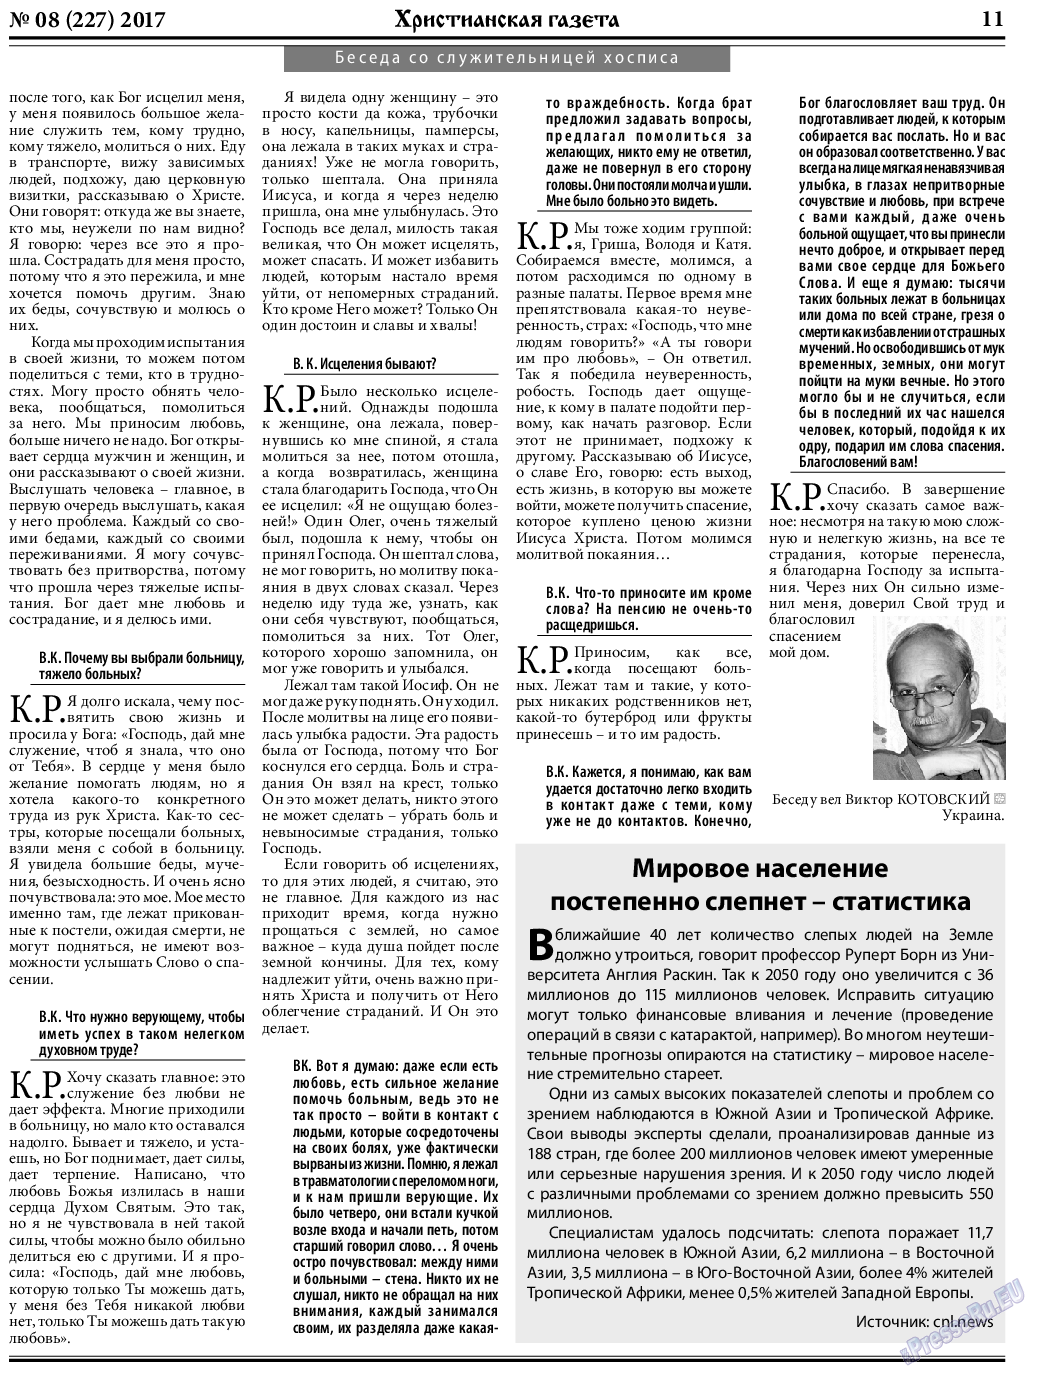 Христианская газета, газета. 2017 №8 стр.11